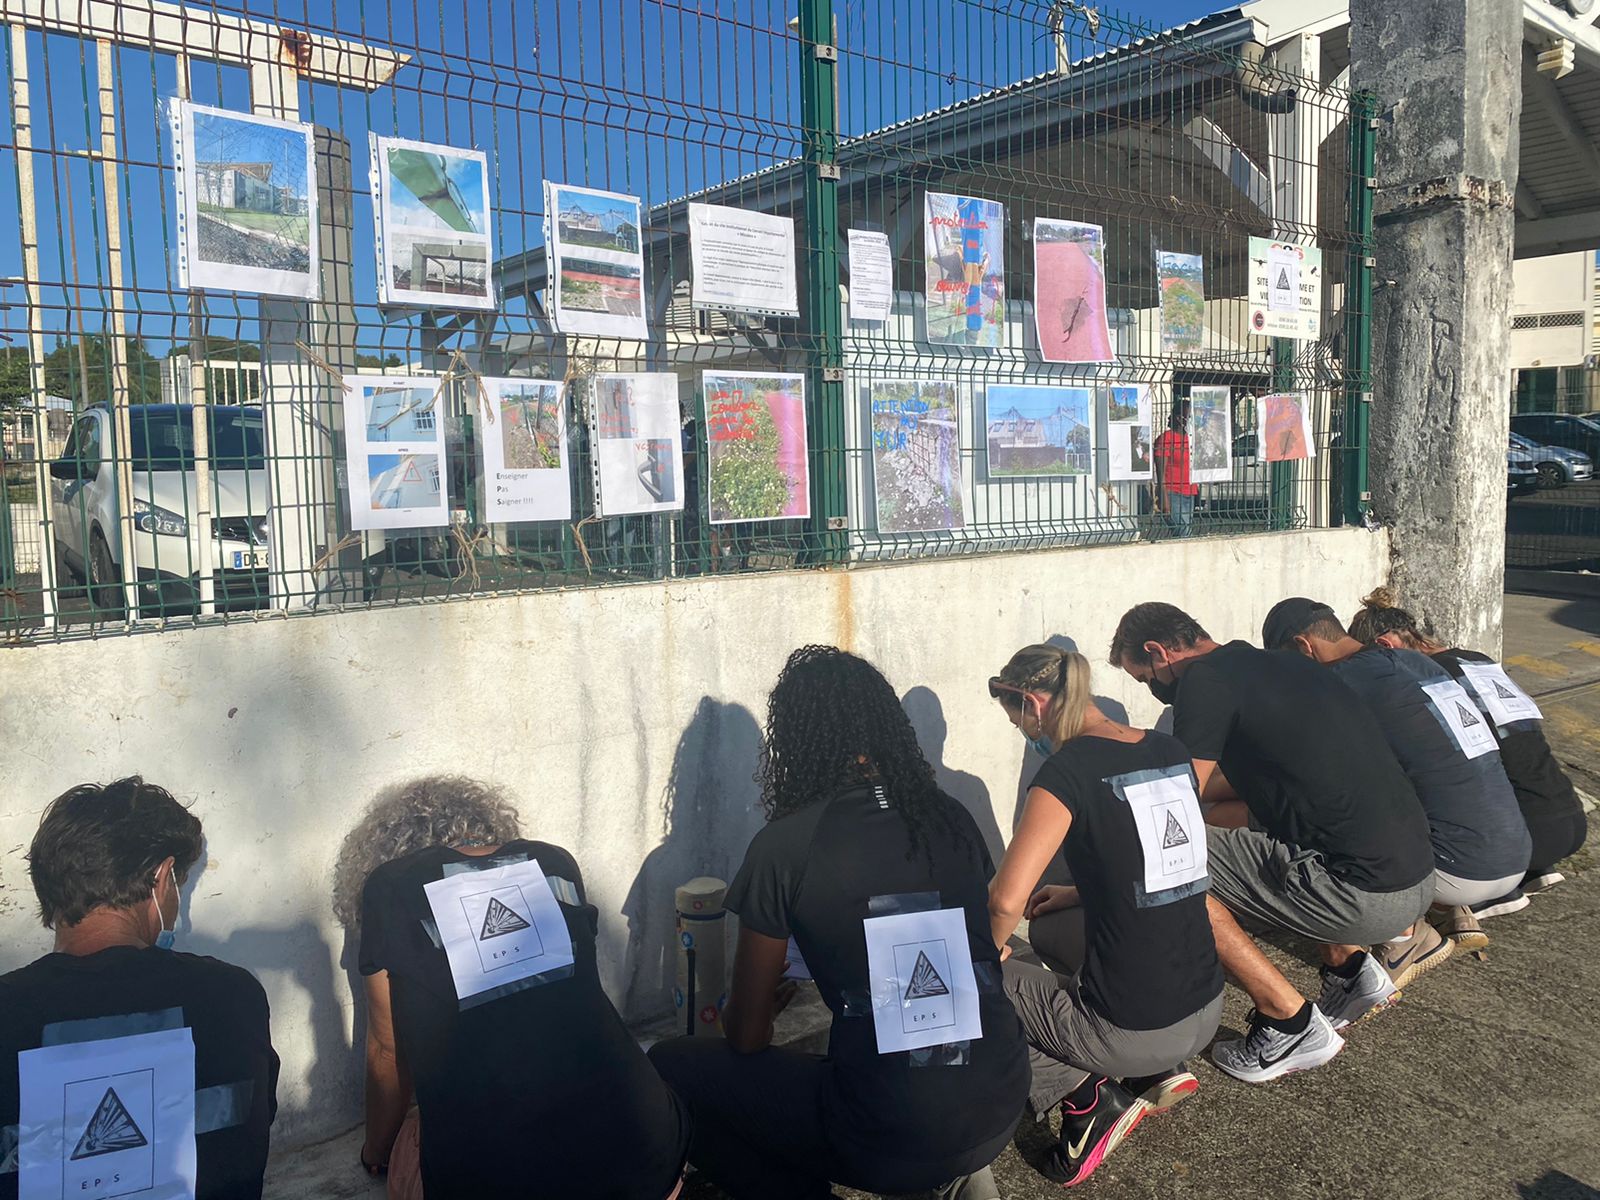     Les professeurs d'EPS ont protesté à Petit-Bourg 

